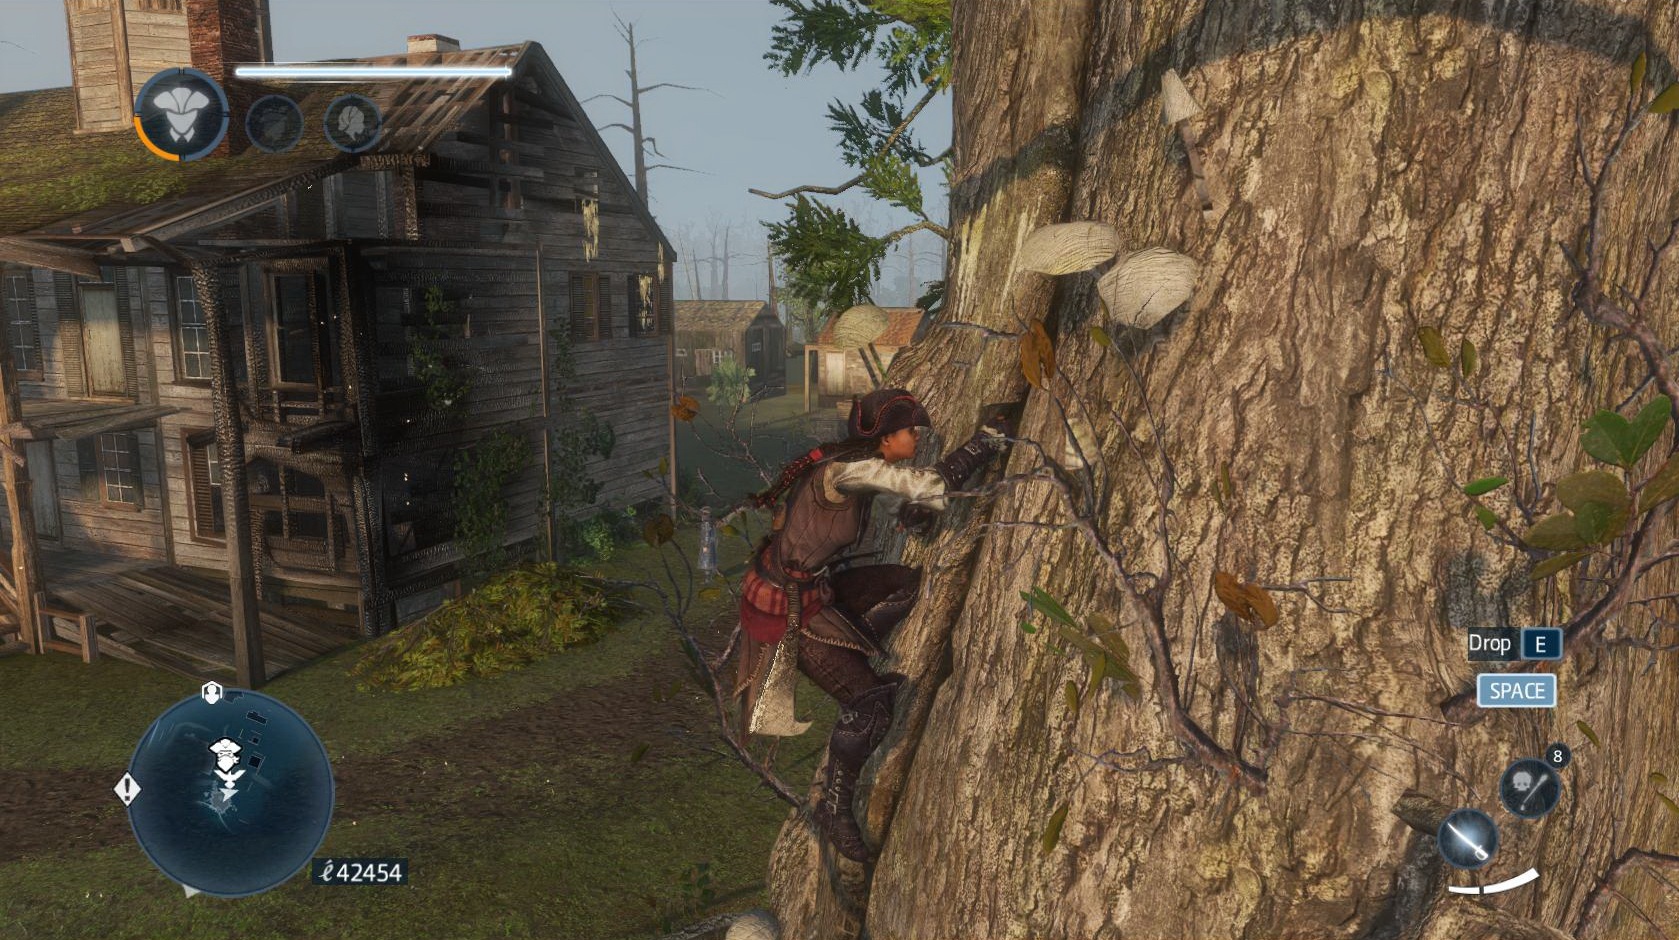 Assassins Creed: Liberation HD V osade paerkov sa na strom Aveline rozhodne netver preto, aby si nazbierala za hrs eren.